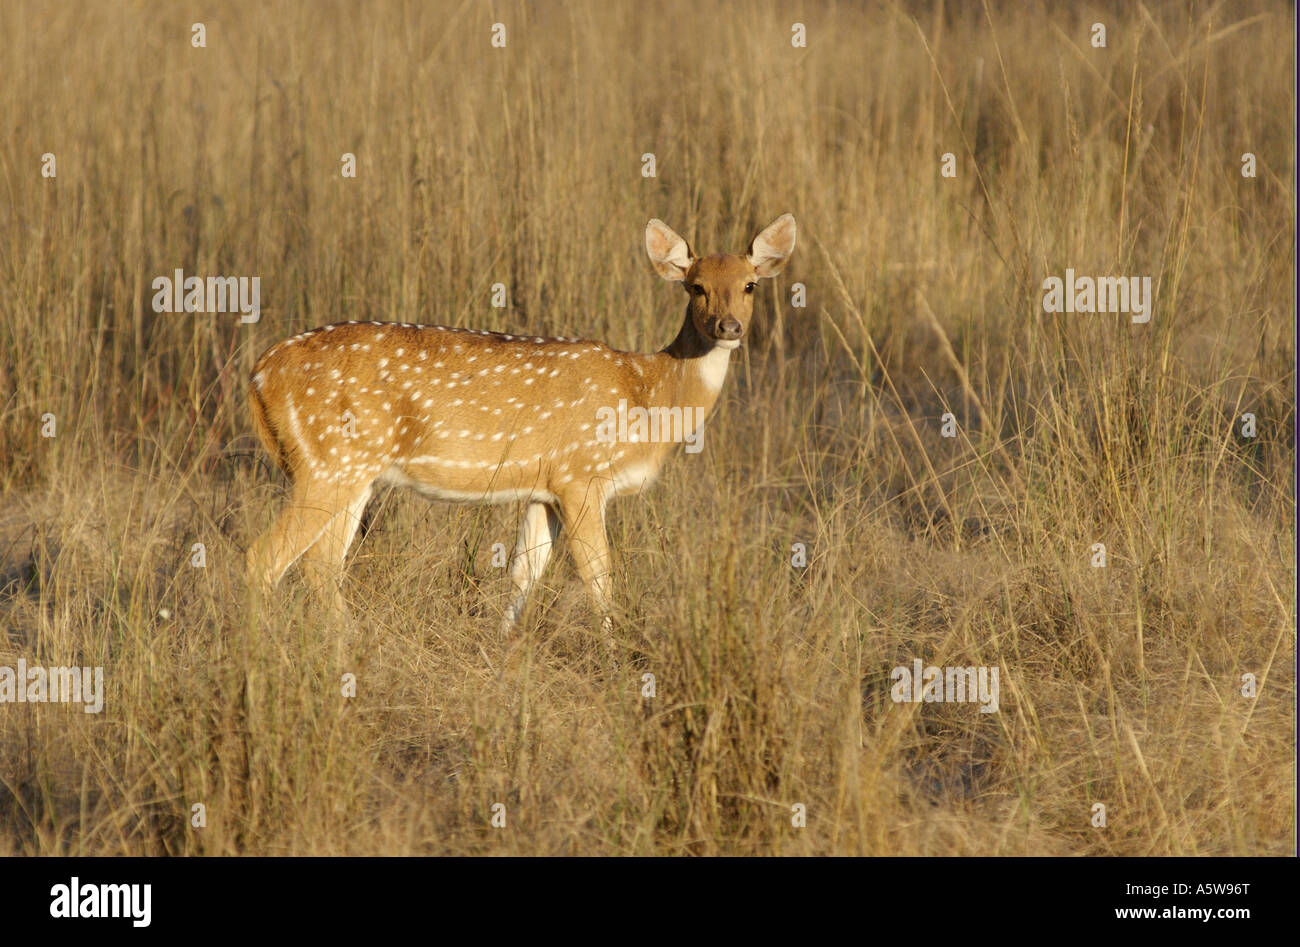 Spotted deer sont importantes pour les animaux de proie le tigre du Bengale Aka Chital ou cheetal Banque D'Images